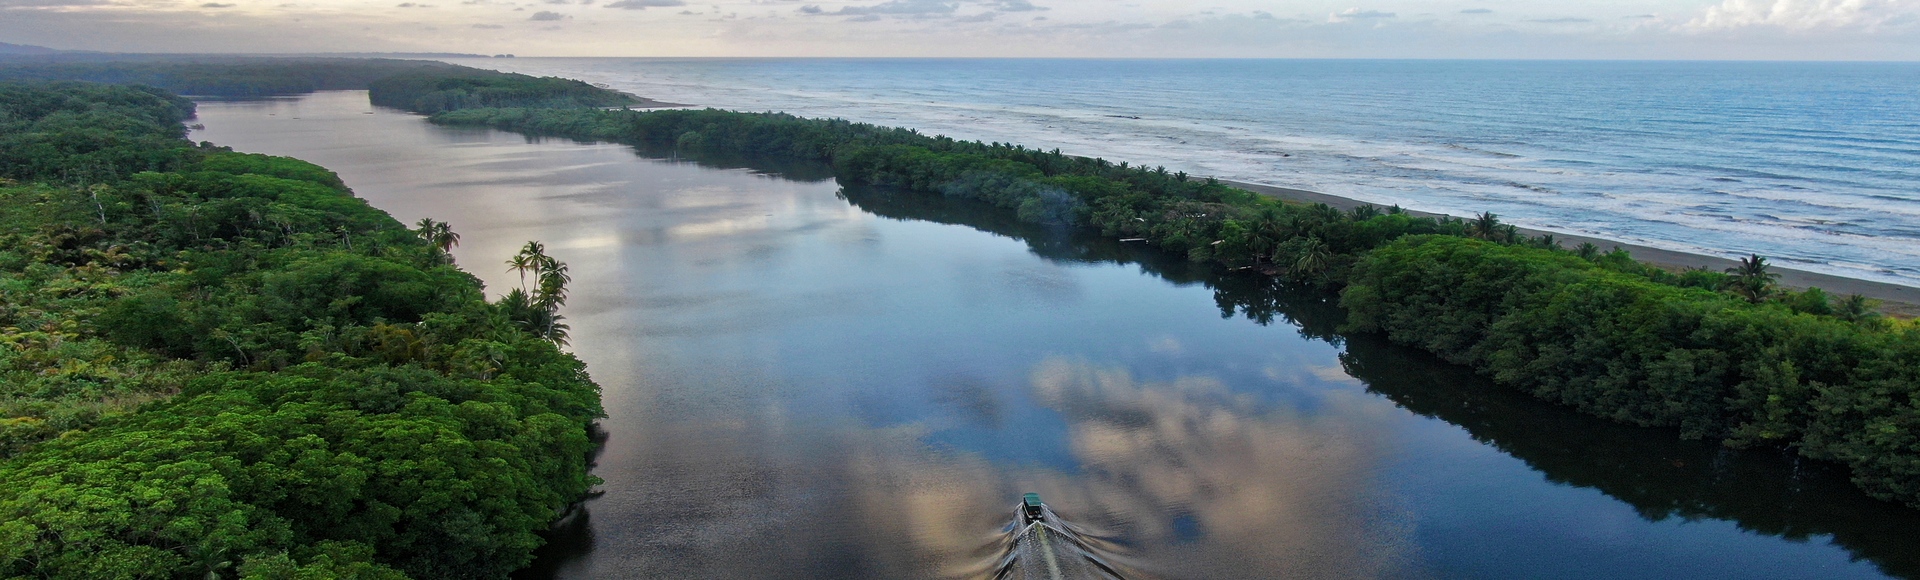 Le Río San Juan longe la mer des Caraïbes - Panama - Destination Latines